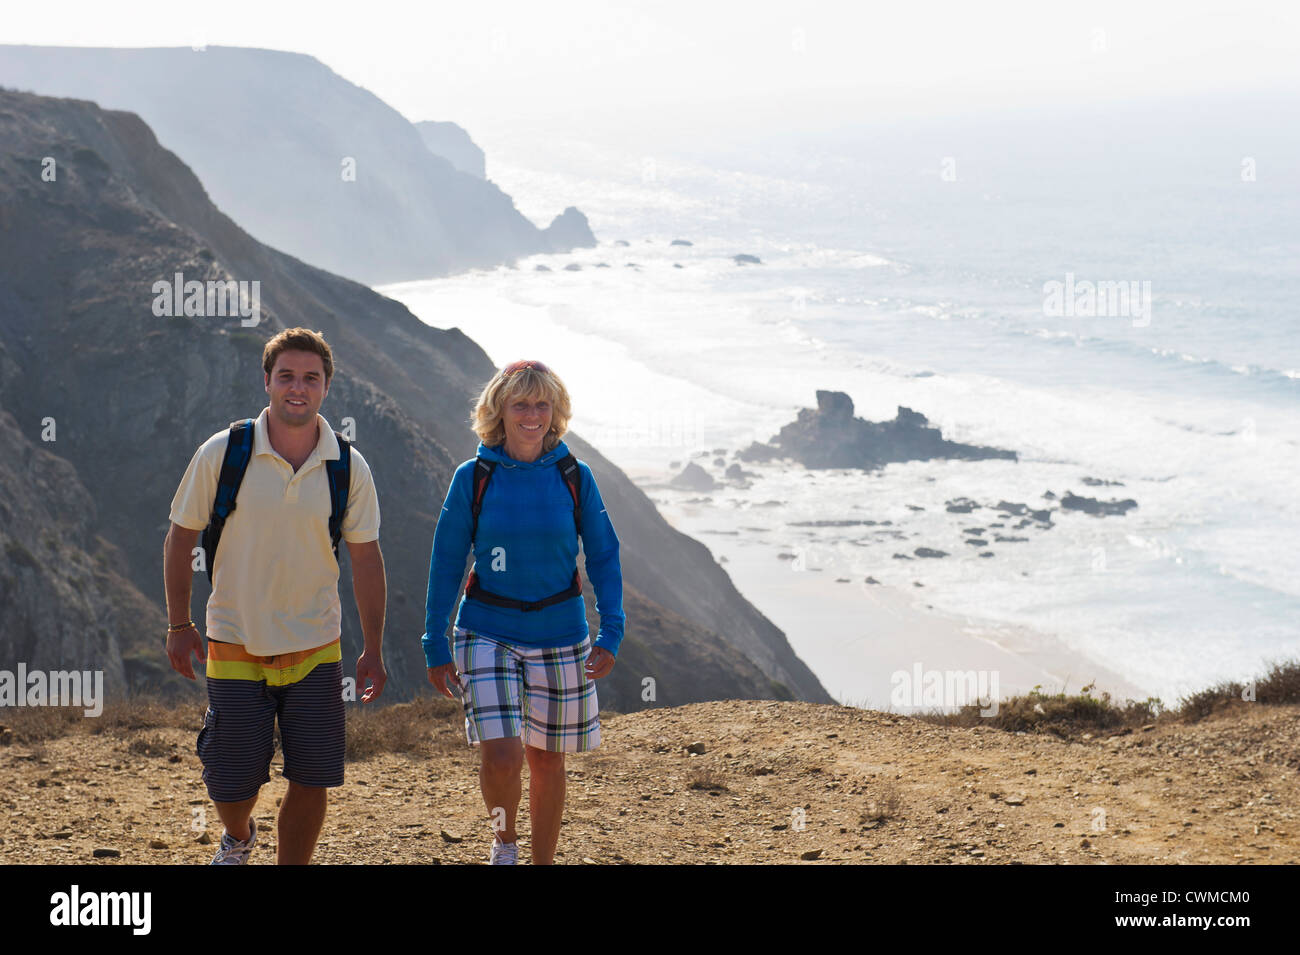 Le Portugal, l'homme et la femme randonnées en montagne Banque D'Images